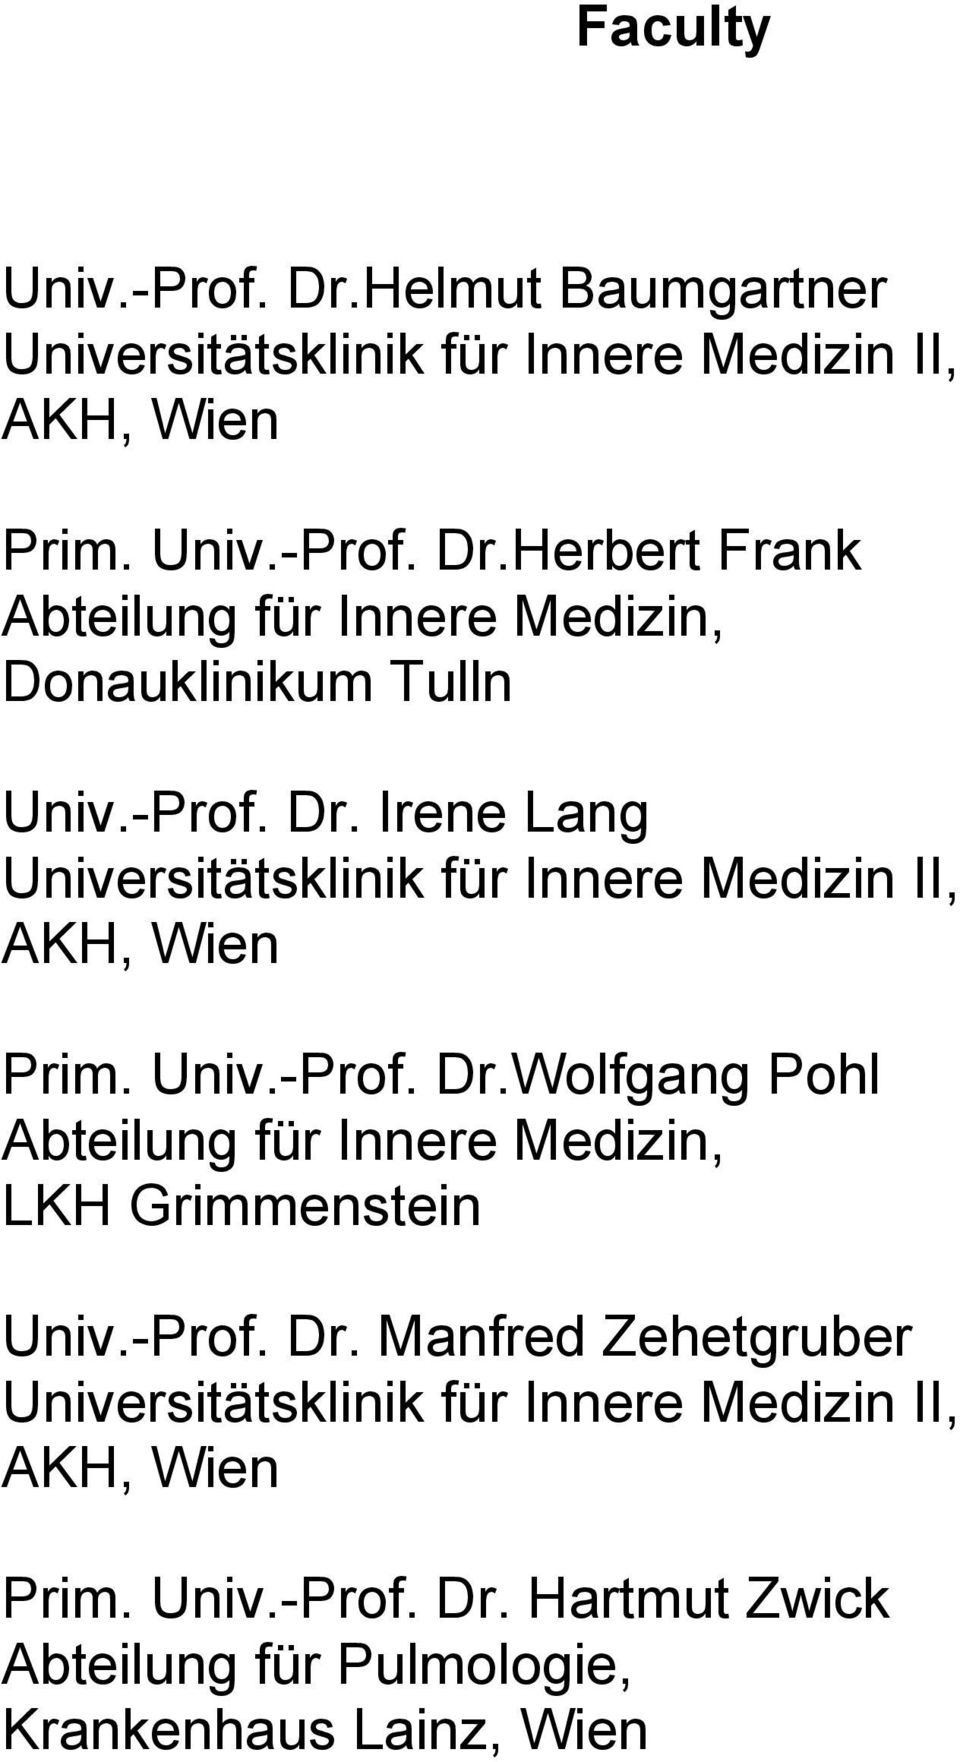 -Prof. Dr. Manfred Zehetgruber Universitätsklinik für Innere Medizin II, AKH, Wien Prim. Univ.-Prof. Dr. Hartmut Zwick Abteilung für Pulmologie, Krankenhaus Lainz, Wien